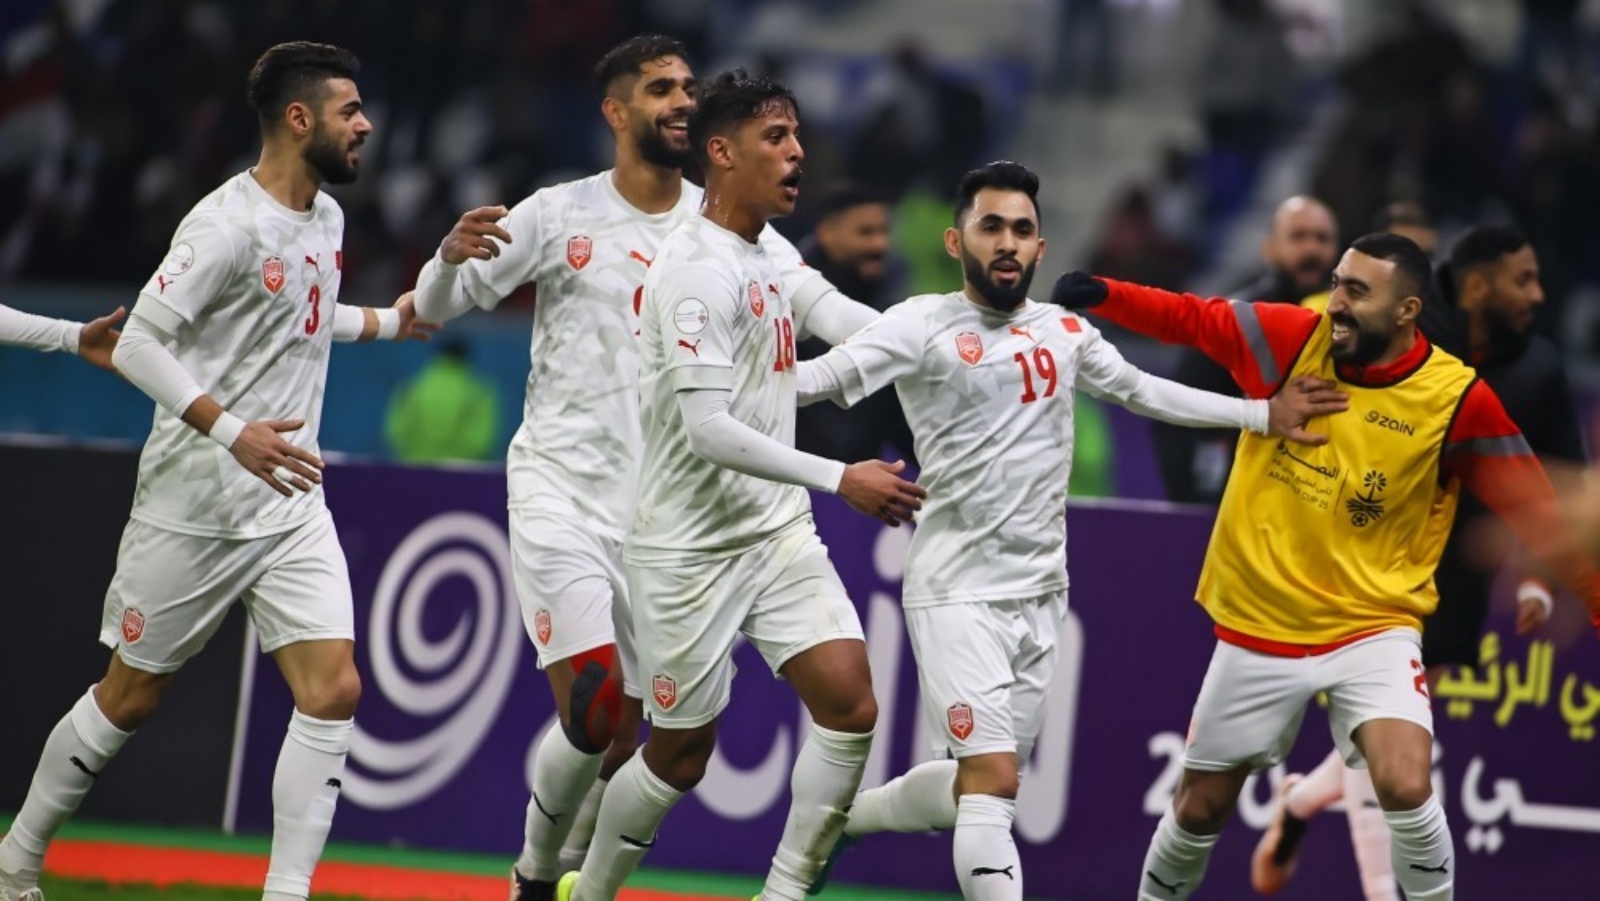 بات منتخب البحرين حامل اللقب قاب مباراة من خطف العبور إلى الدور نصف النهائي من بطولة كأس الخليج